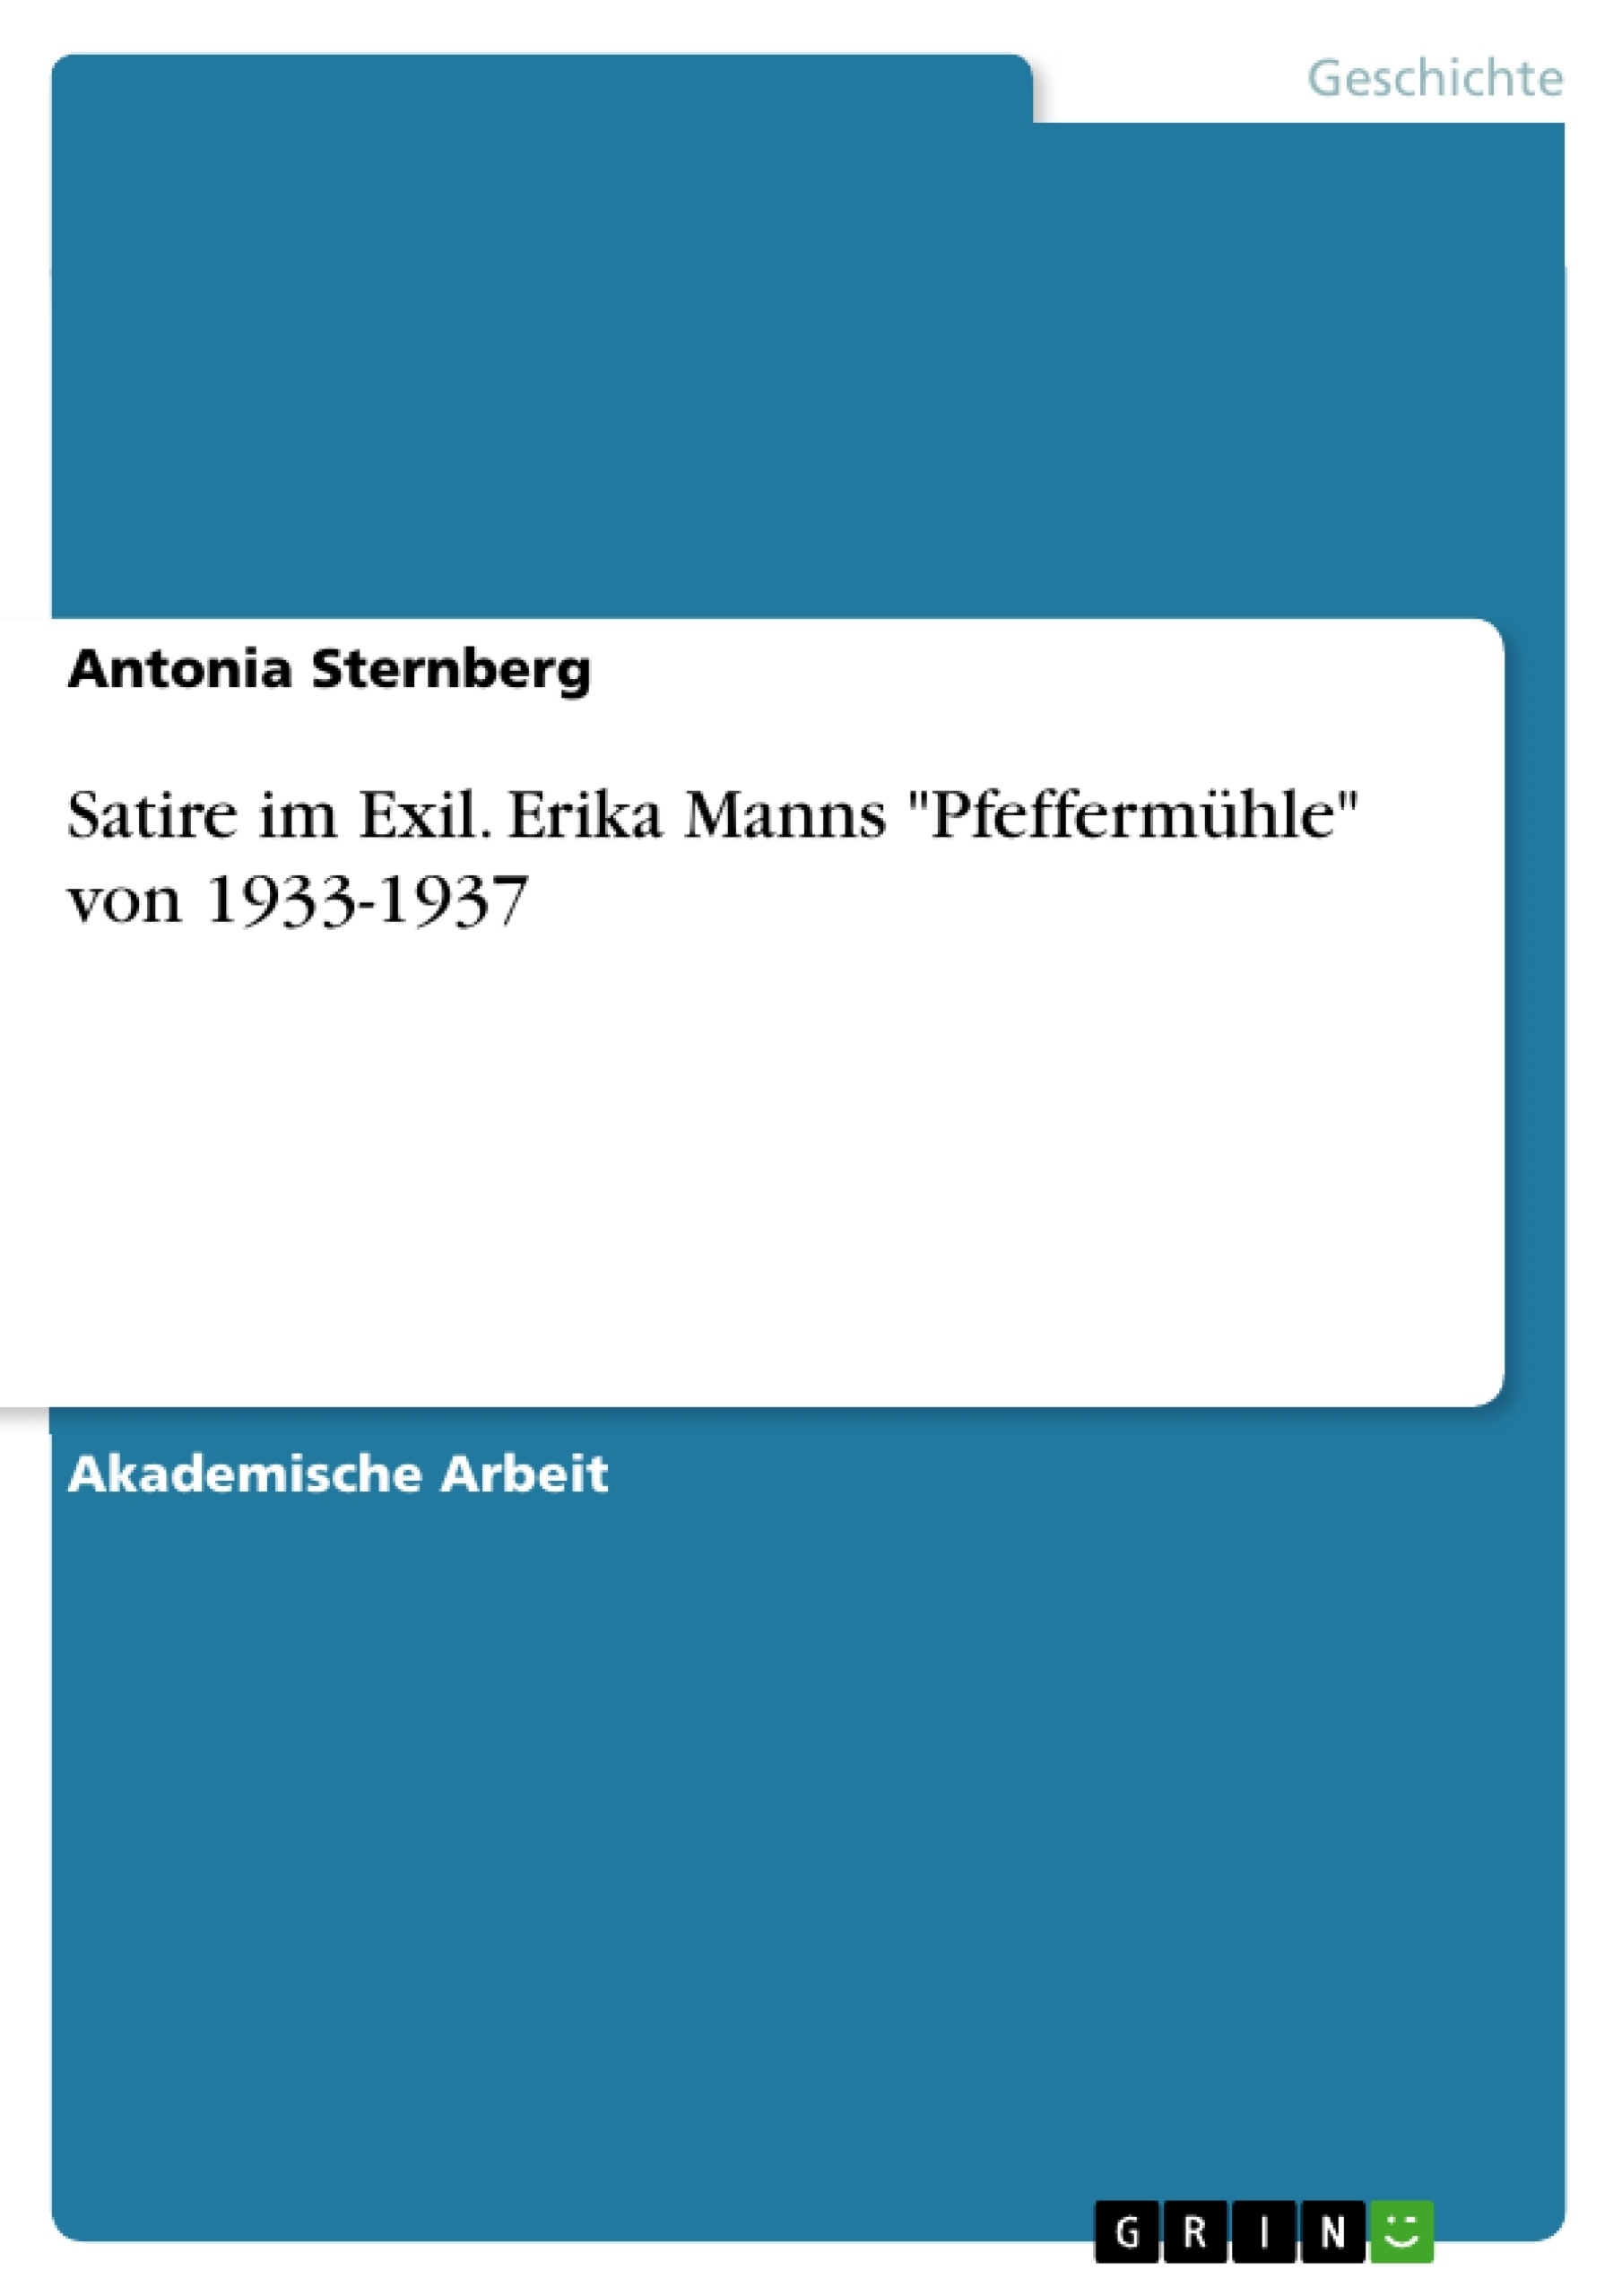 Título: Satire im Exil. Erika Manns "Pfeffermühle" von 1933-1937